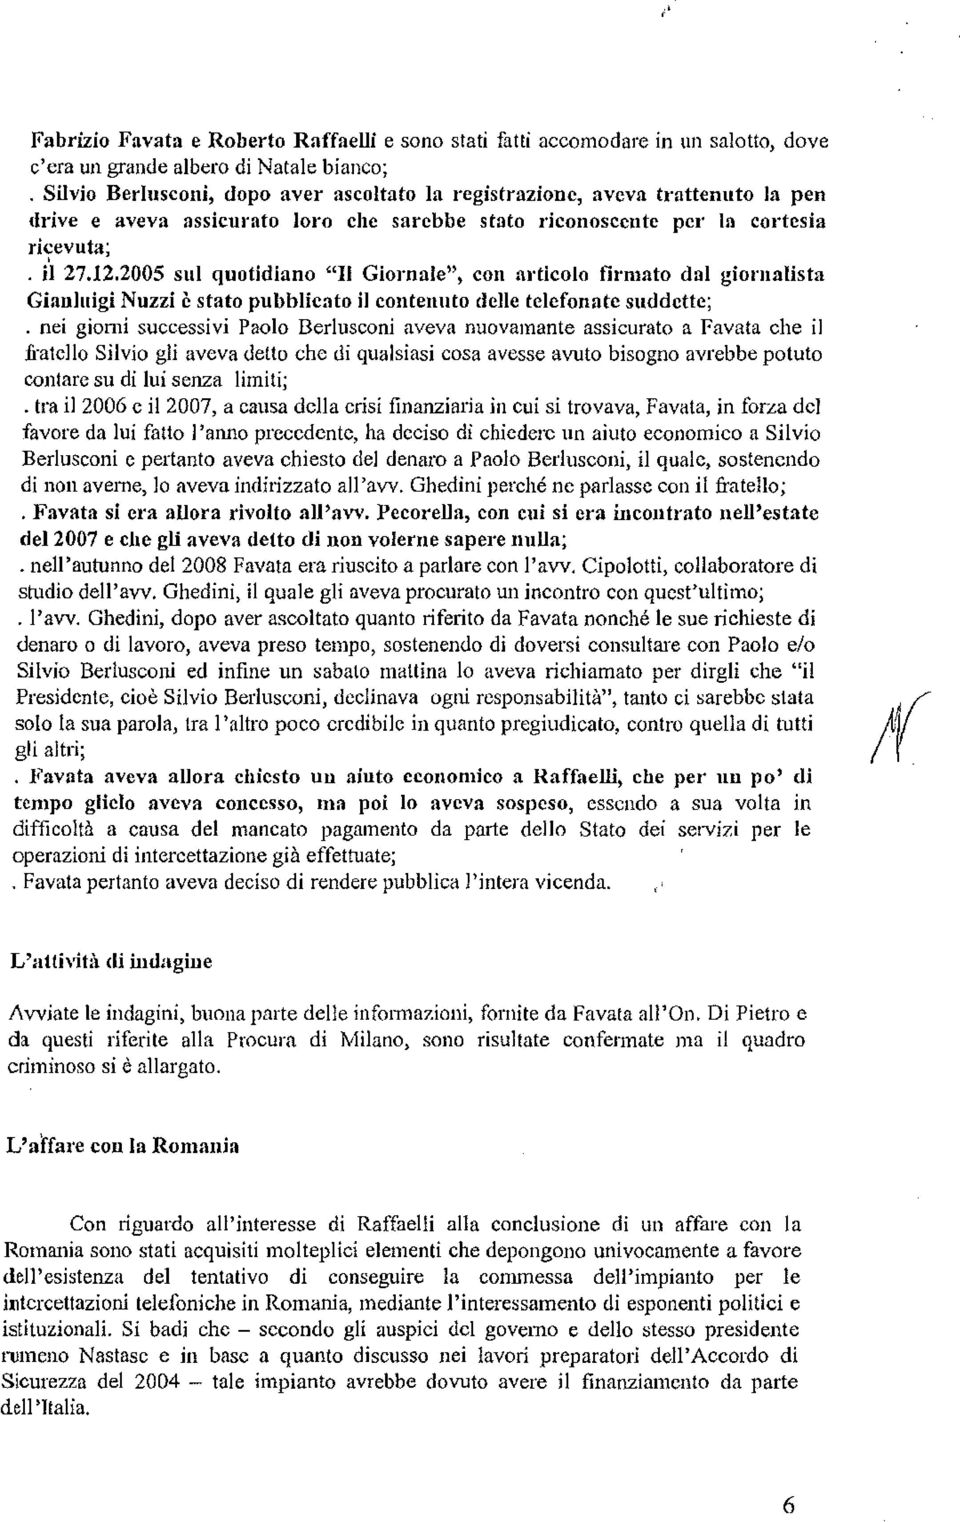 2005 sul quotidiano "Il Giornale", con articolo firmato dal giol'llalista Gianluigi Nuzzi è stato pubblicato il contenuto delle telefonate suddette; nei giorni successivi Paolo Berlusconi aveva